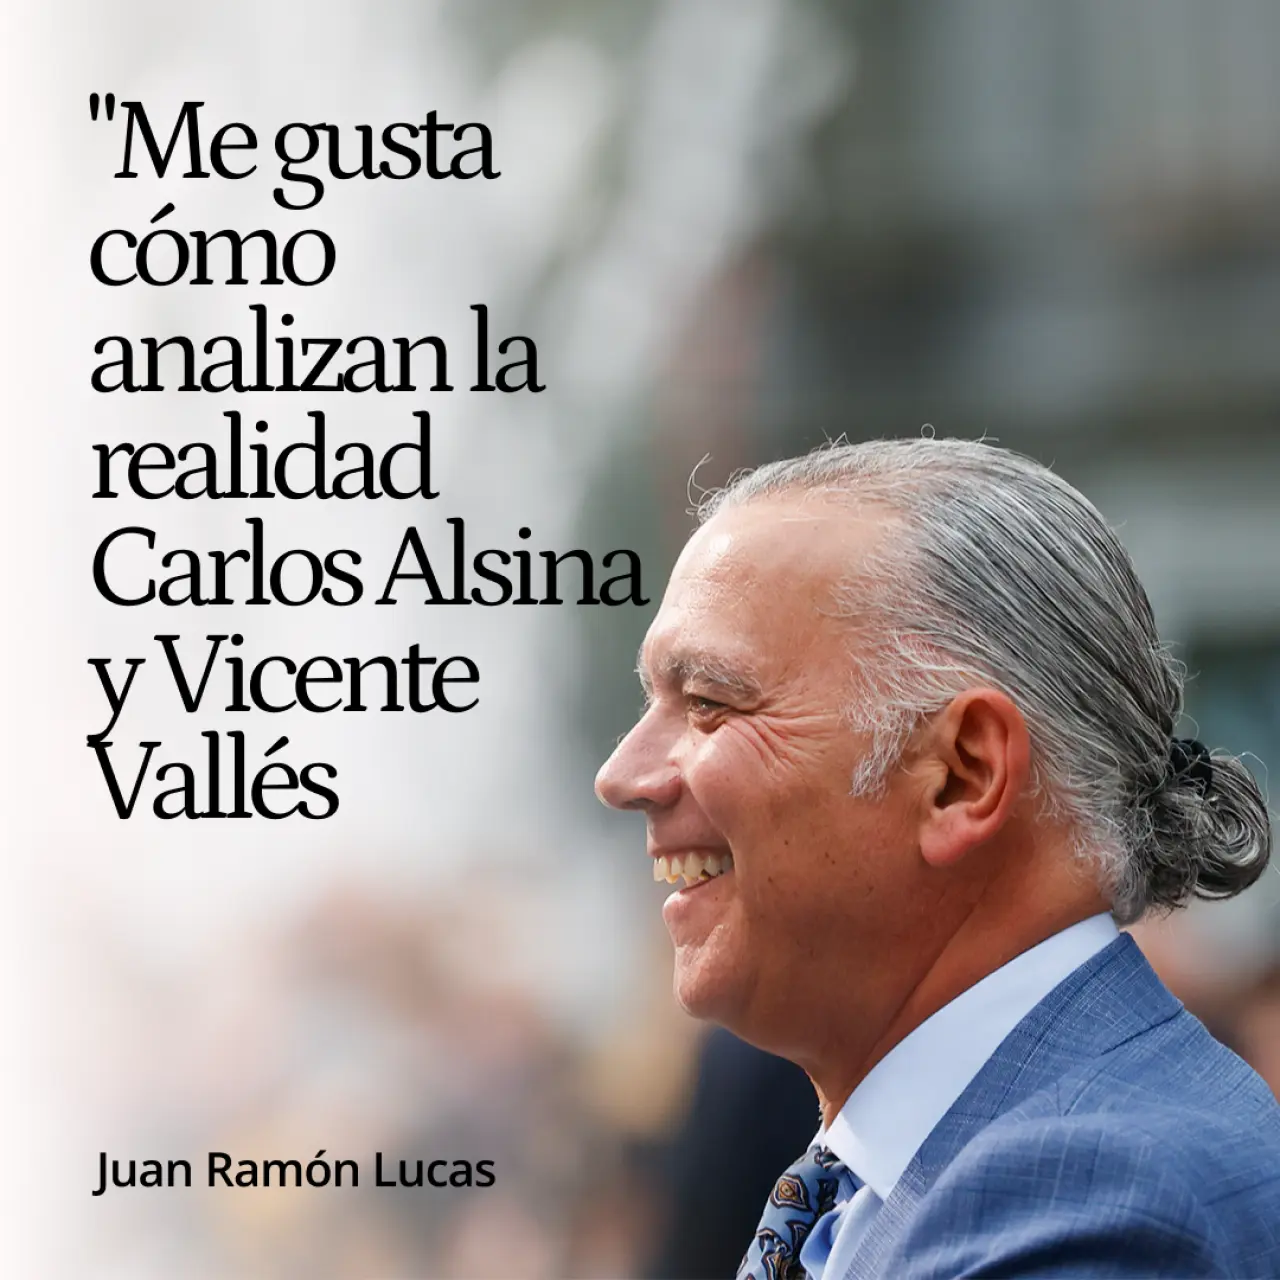 Juan Ramón Lucas: "Me gusta cómo analizan la realidad Carlos Alsina y Vicente Vallés, y son dos tíos a los que cierta izquierda critica"